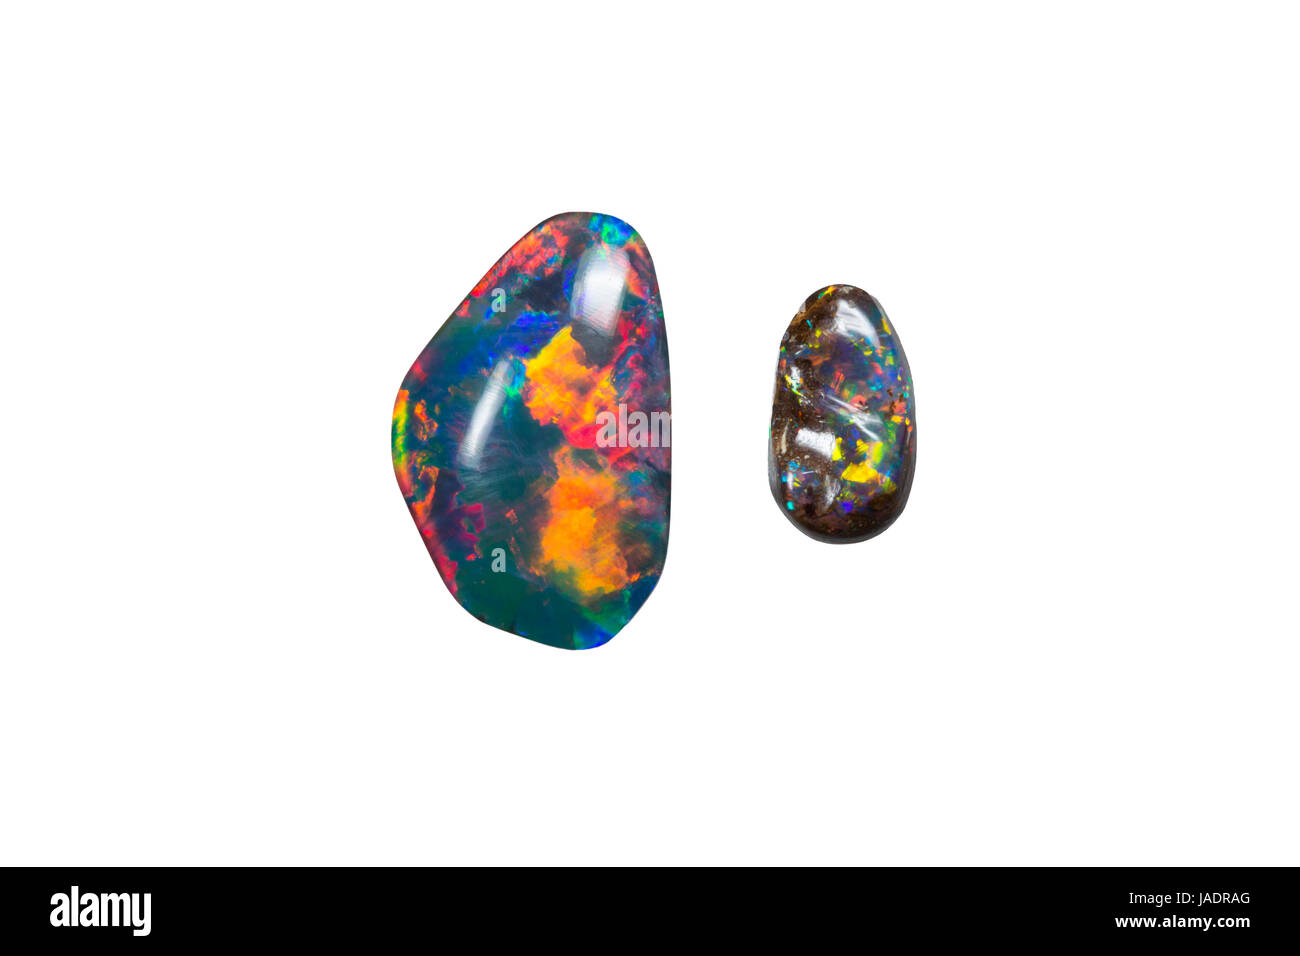 Ein kleiner und ein grosser opale, freigestellt Foto Stock